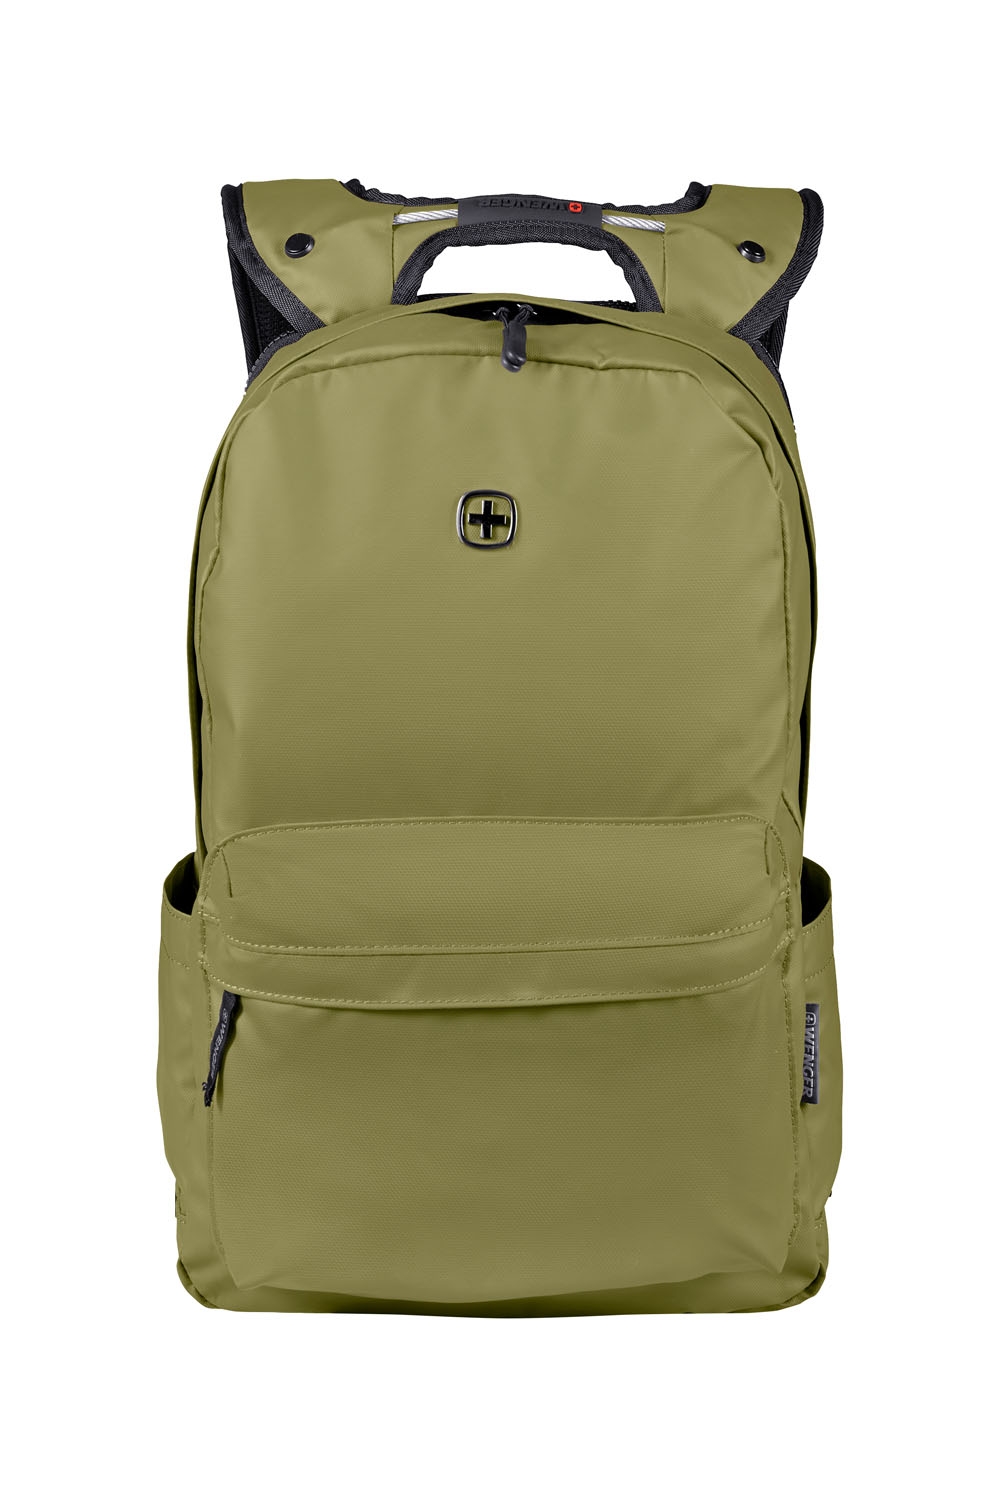 Рюкзак WENGER 14'', оливковый, полиэстер, 28 x 22 x 41 см, 18 л, зеленый